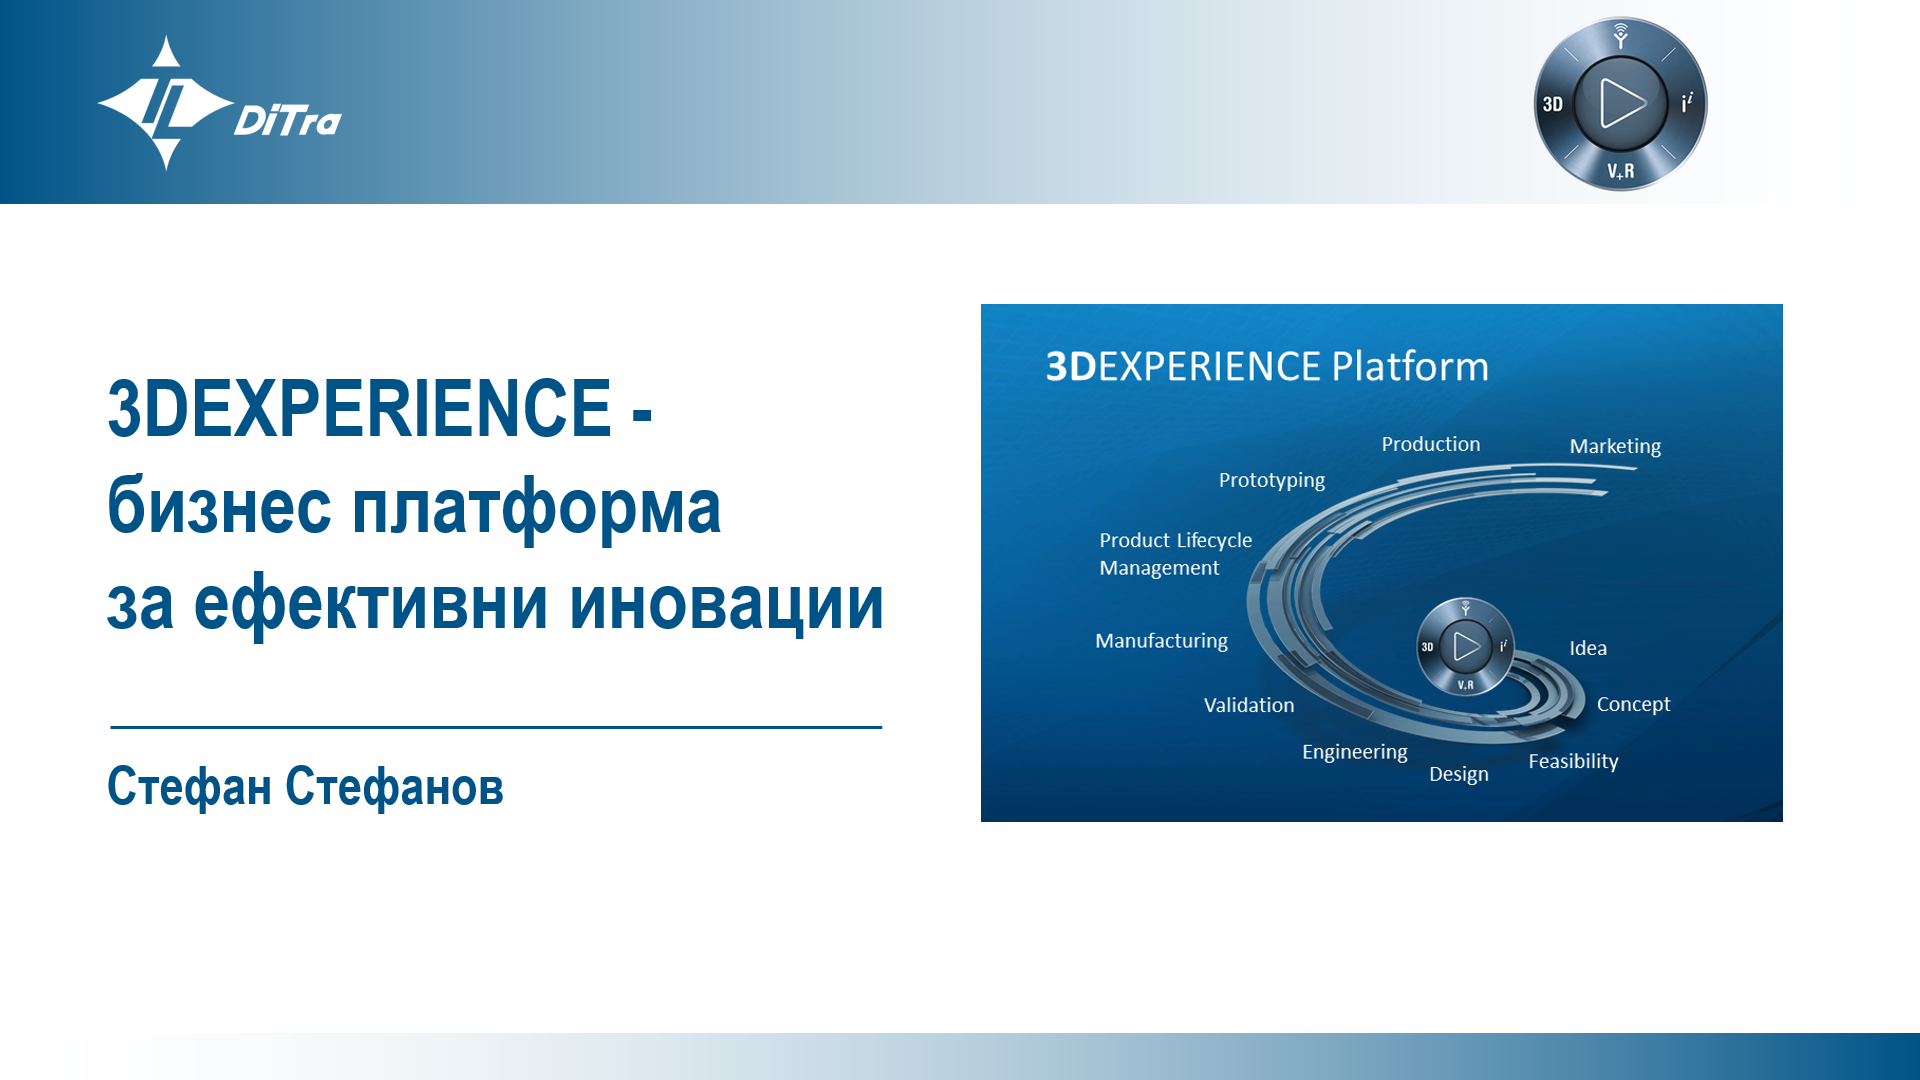 3DEXPERIENCE - бизнес платформа за ефективни иновации